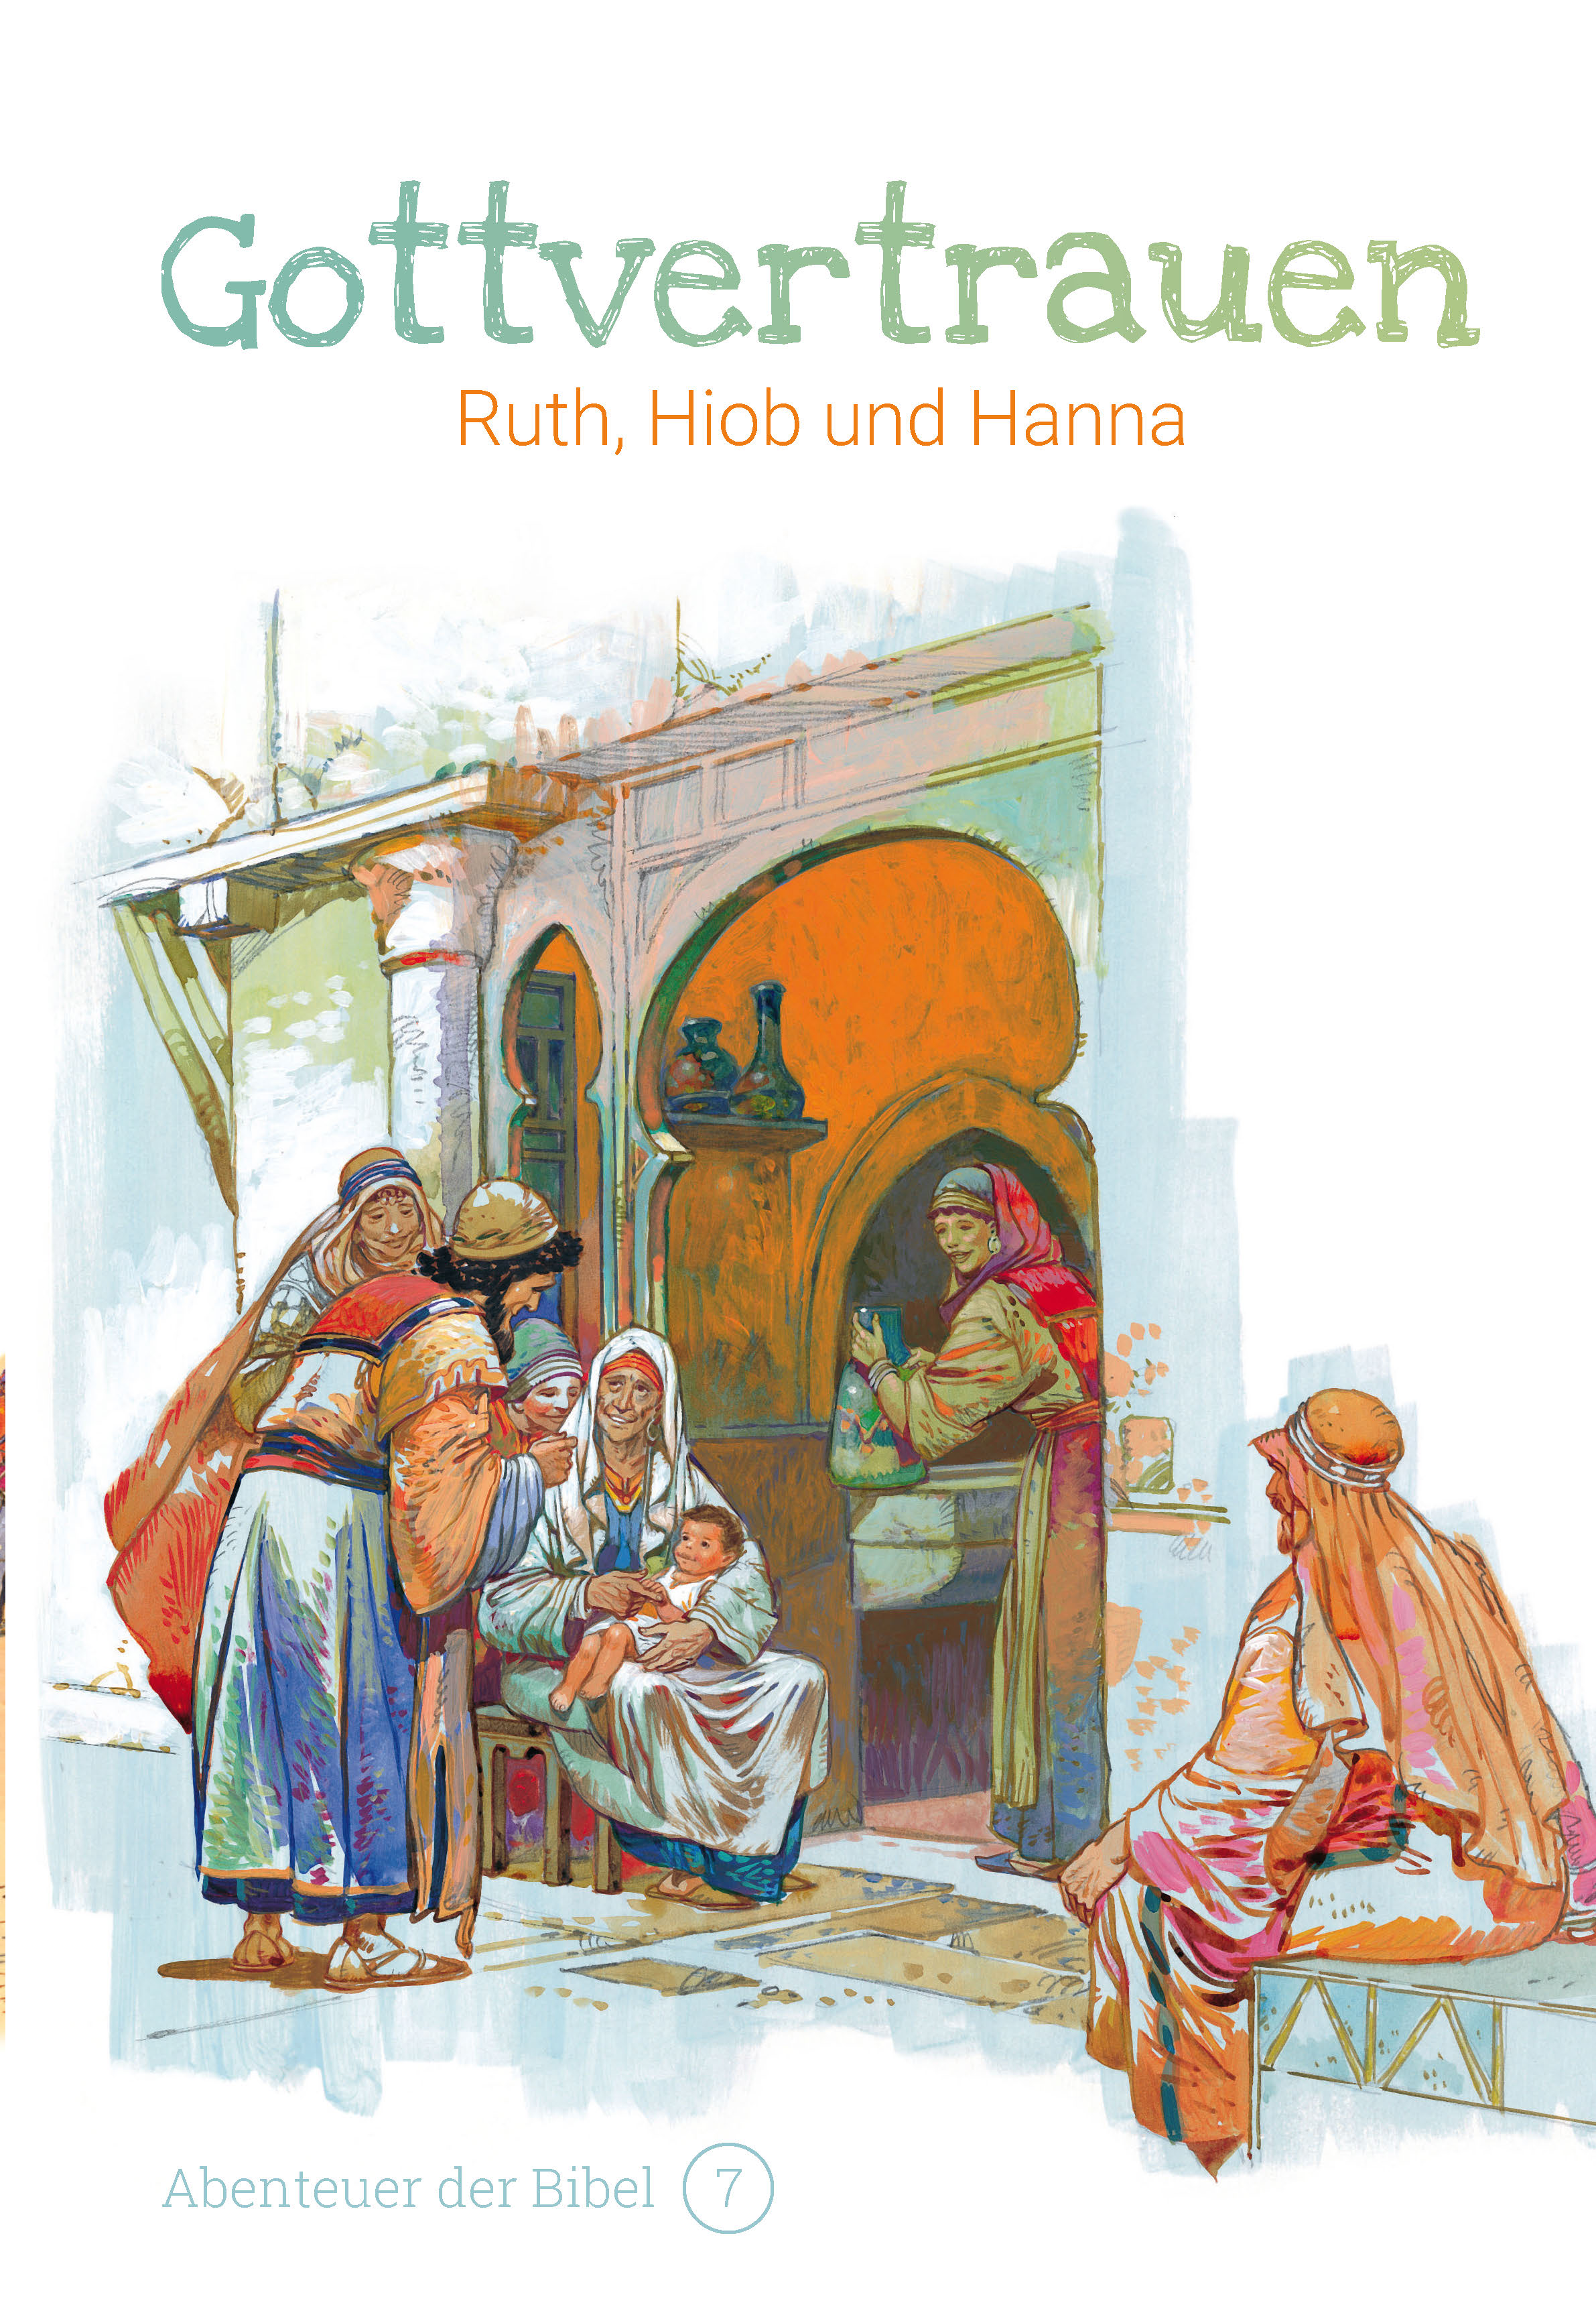 Gottvertrauen - Ruth, Hiob und Hanna (Abenteuer der Bibel - Band 7)